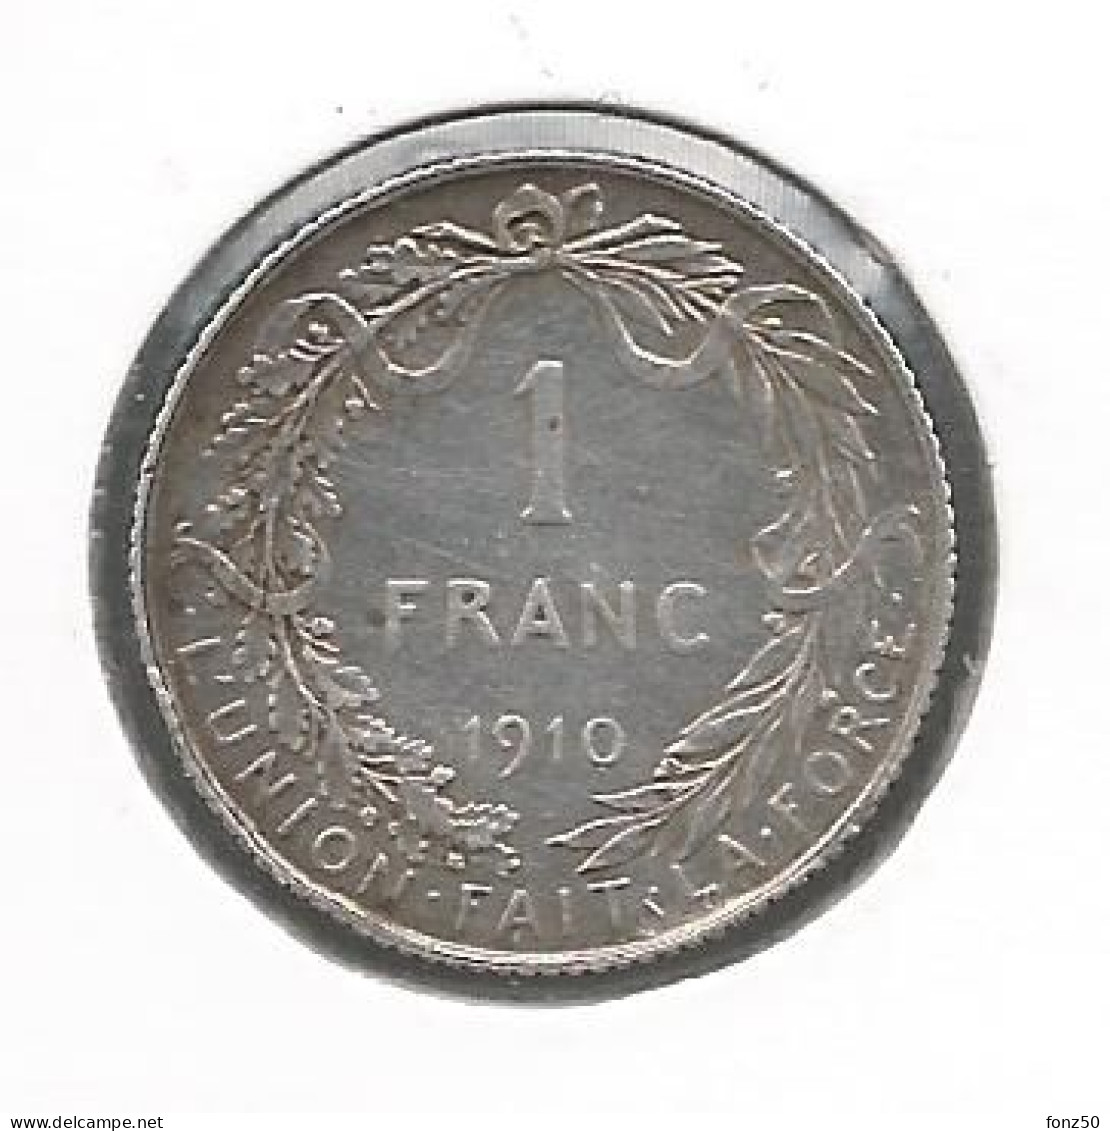 ALBERT I * 1 Frank 1910 Frans * Prachtig * Nr 11498 - 1 Franco